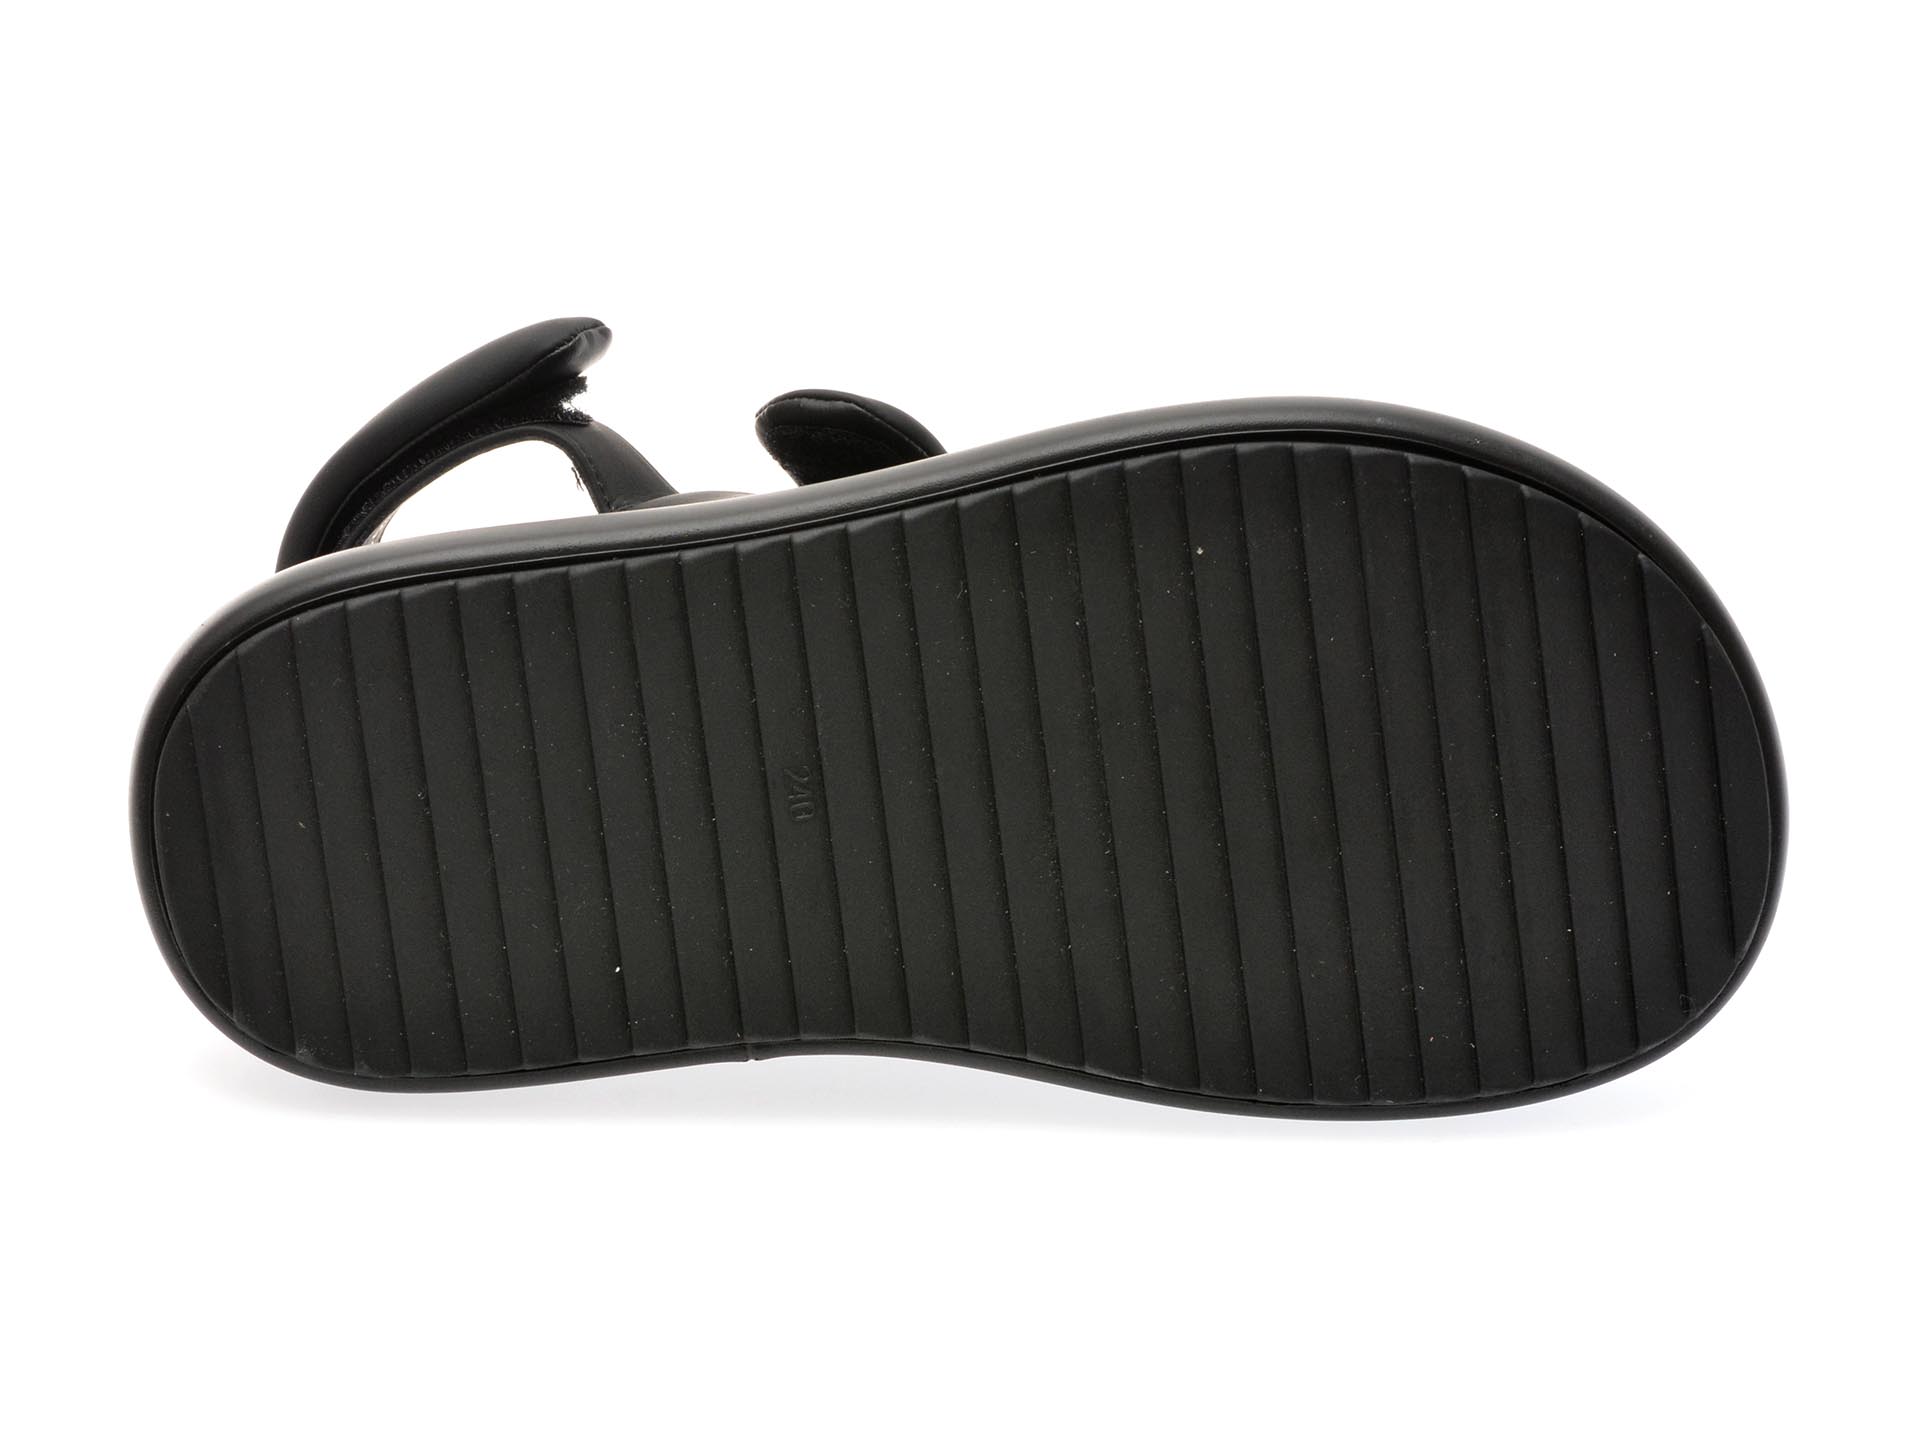 Sandale casual GRYXX negre, 23016, din piele ecologica